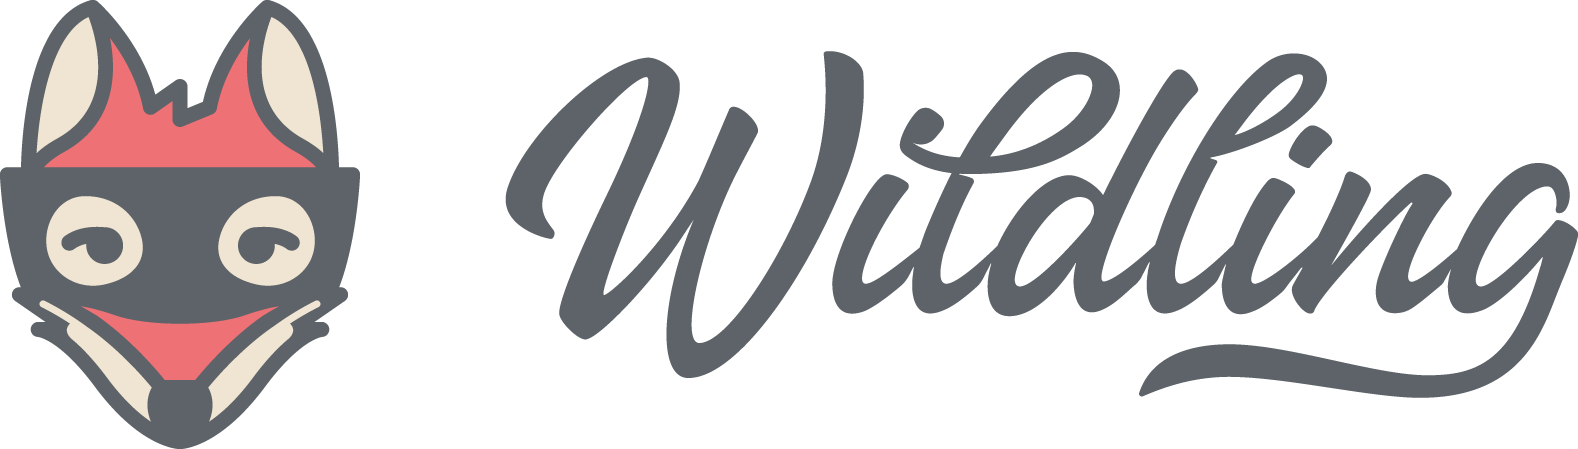 Logo Wildling